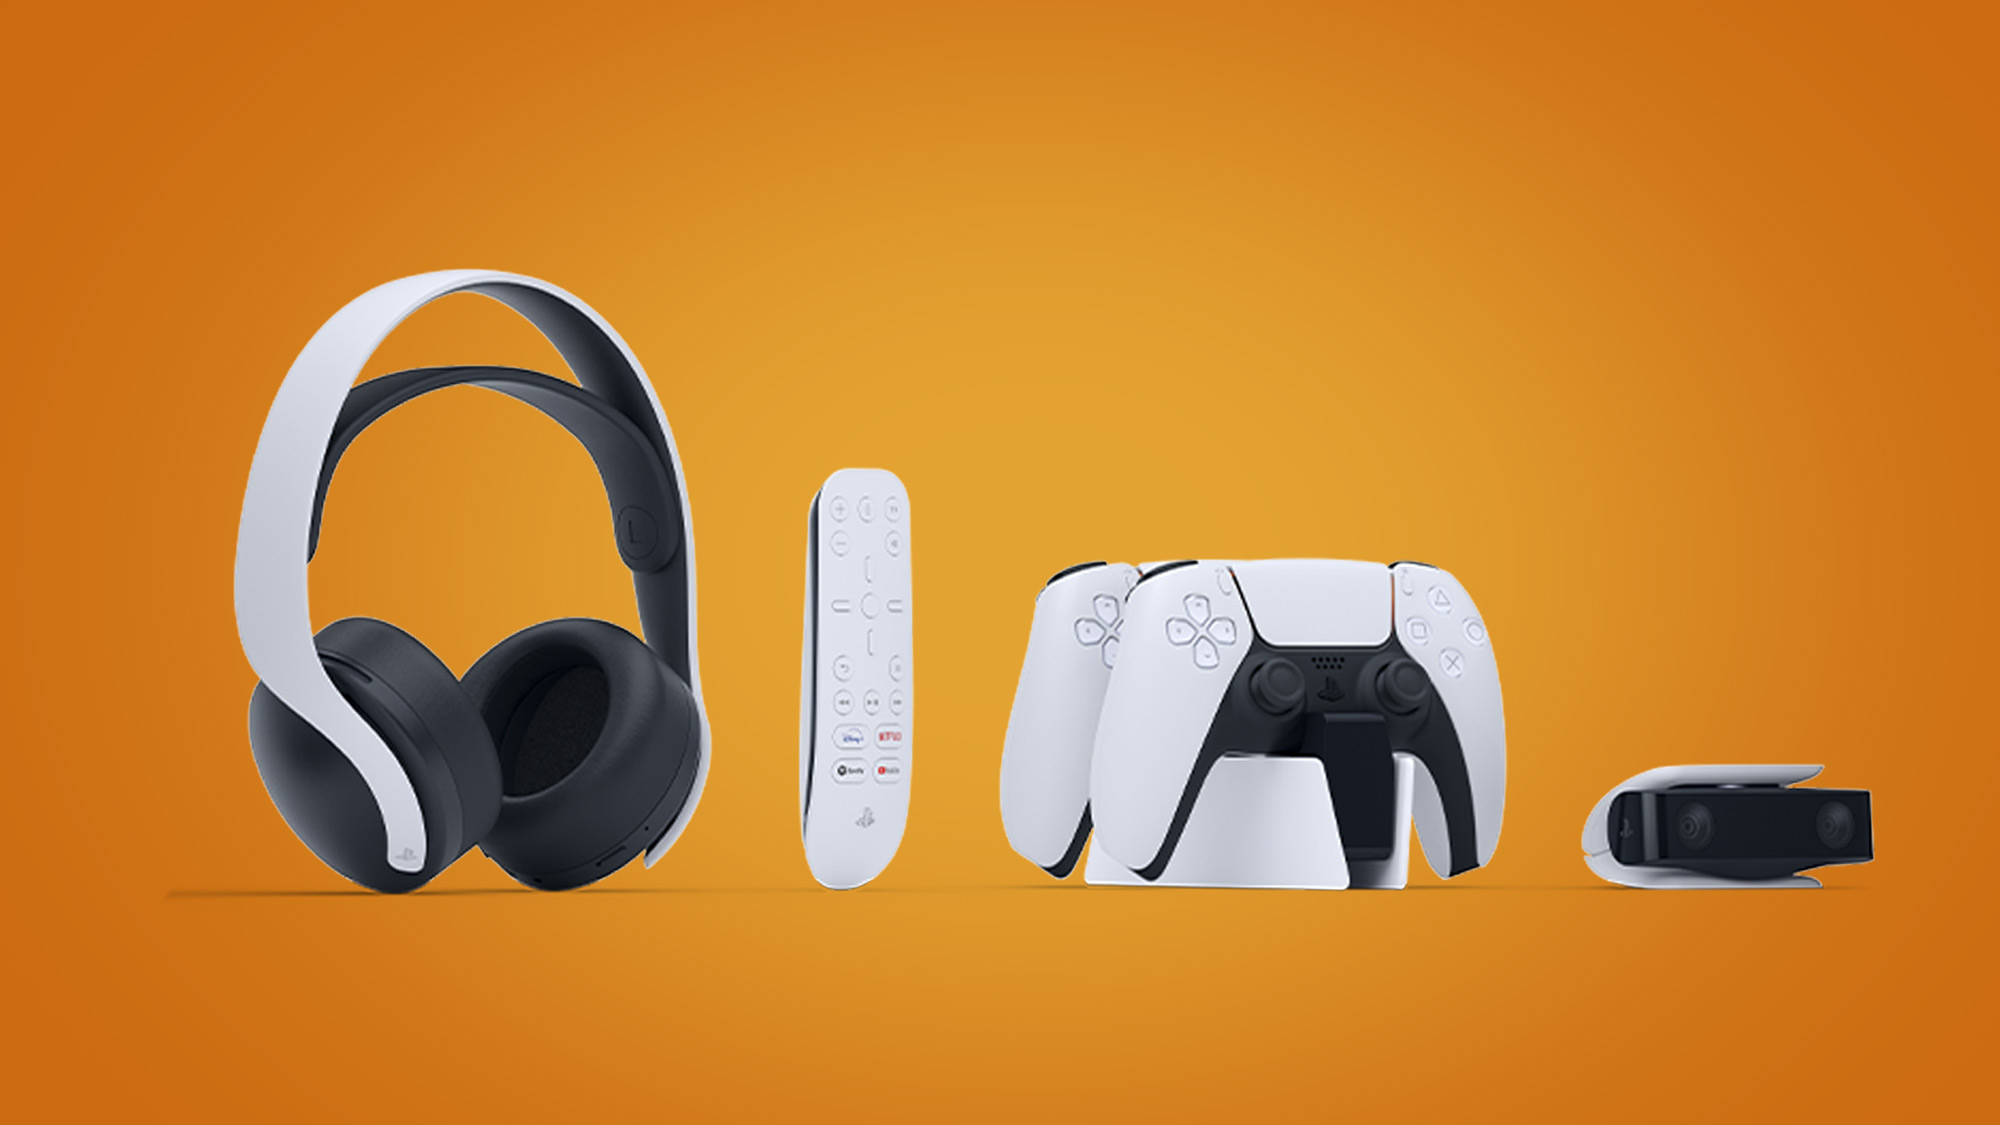 Accessoires PlayStation, Manettes, casques-micro, caméras et autres  accessoires officiels pour PS5